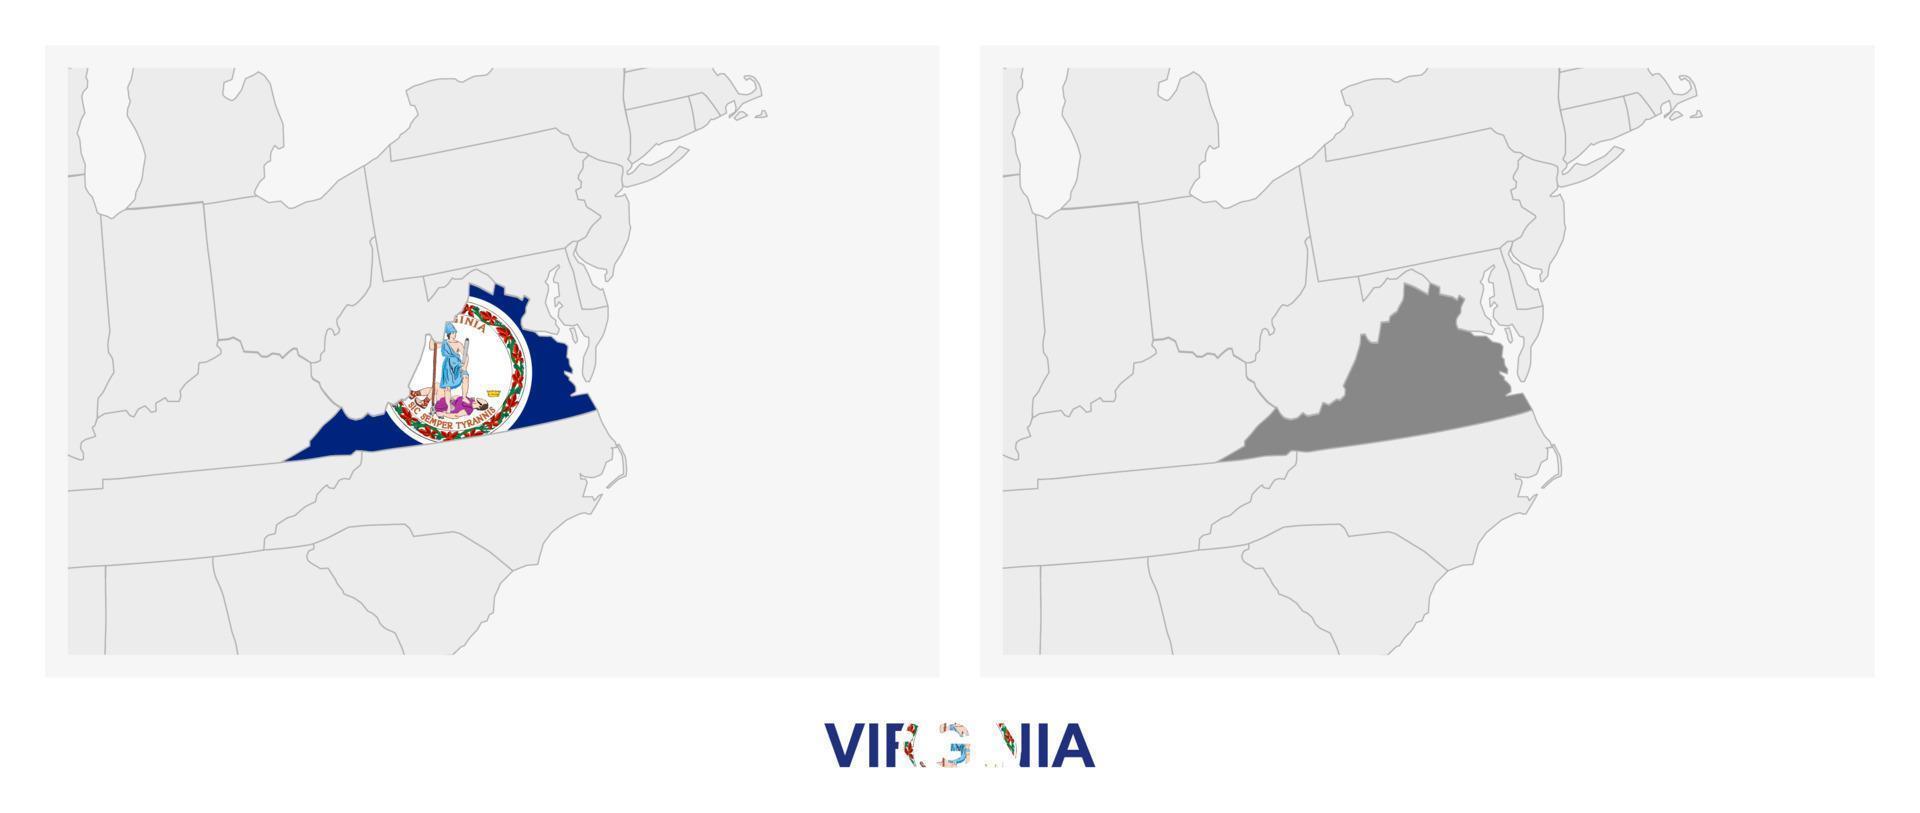 dos versiones del mapa del estado de Virginia, con la bandera de Virginia y resaltada en gris oscuro. vector